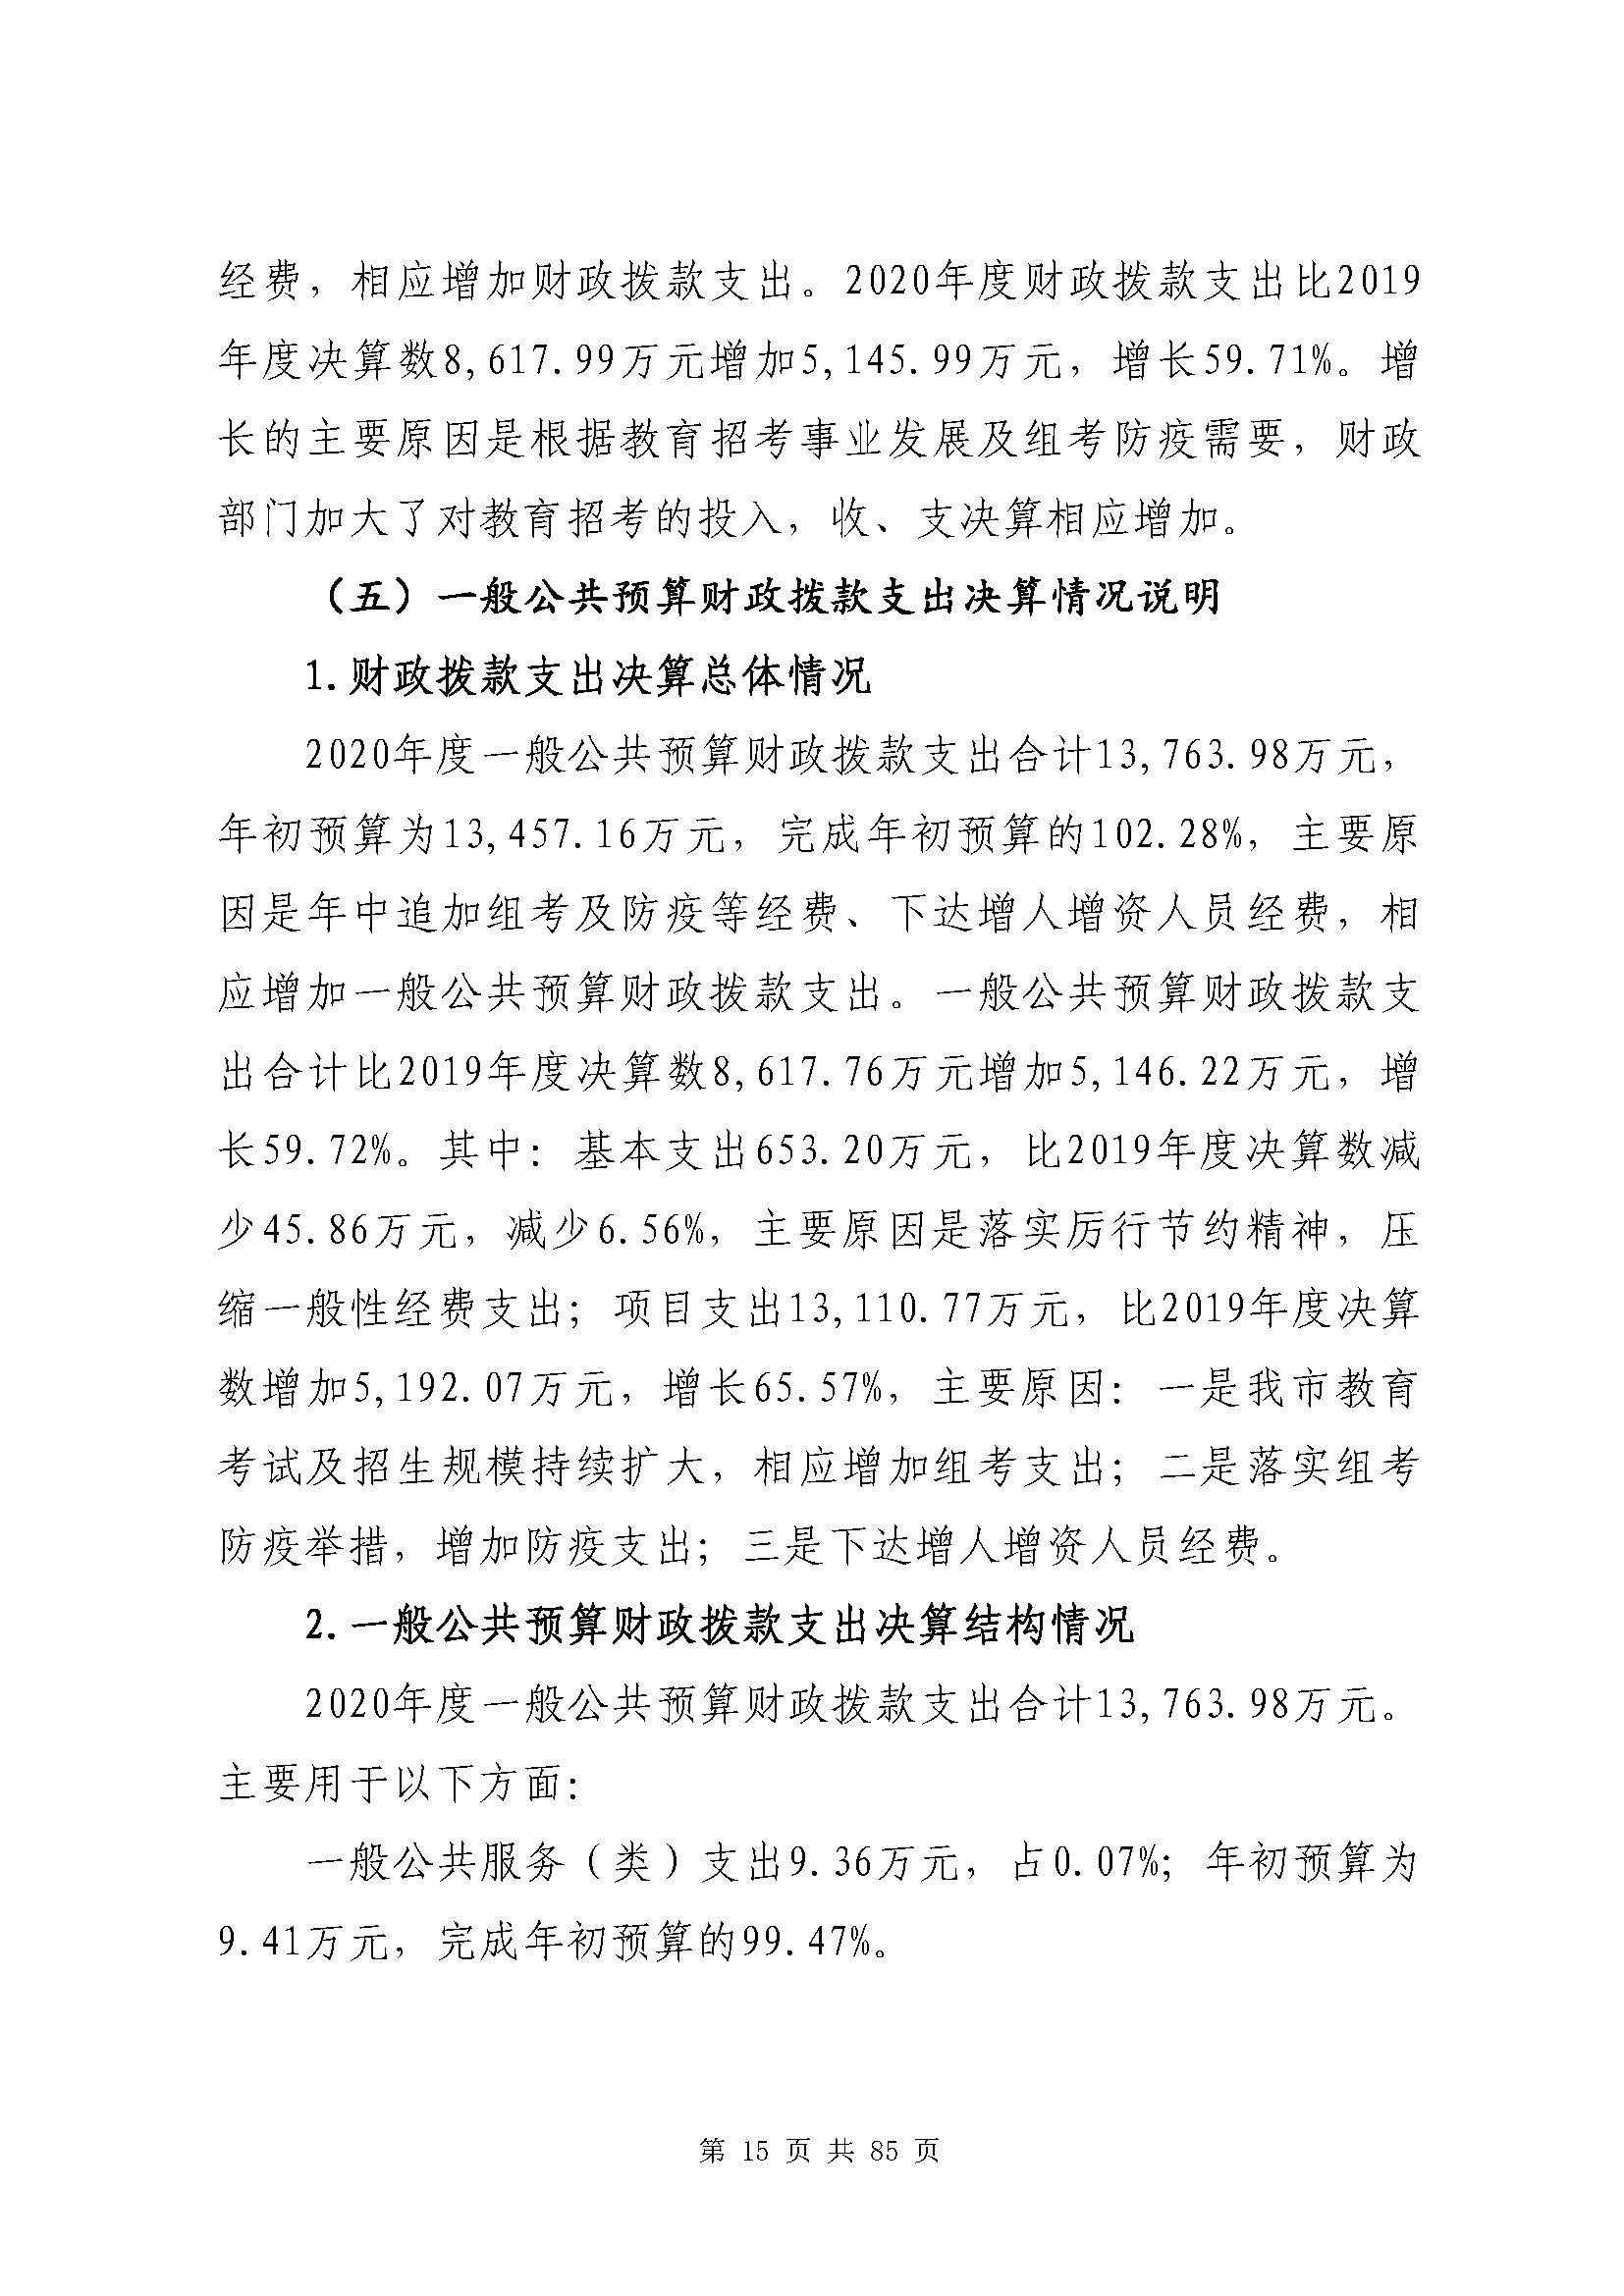 深圳市招生考试办公室2020年度部门决算_页面_16.jpg